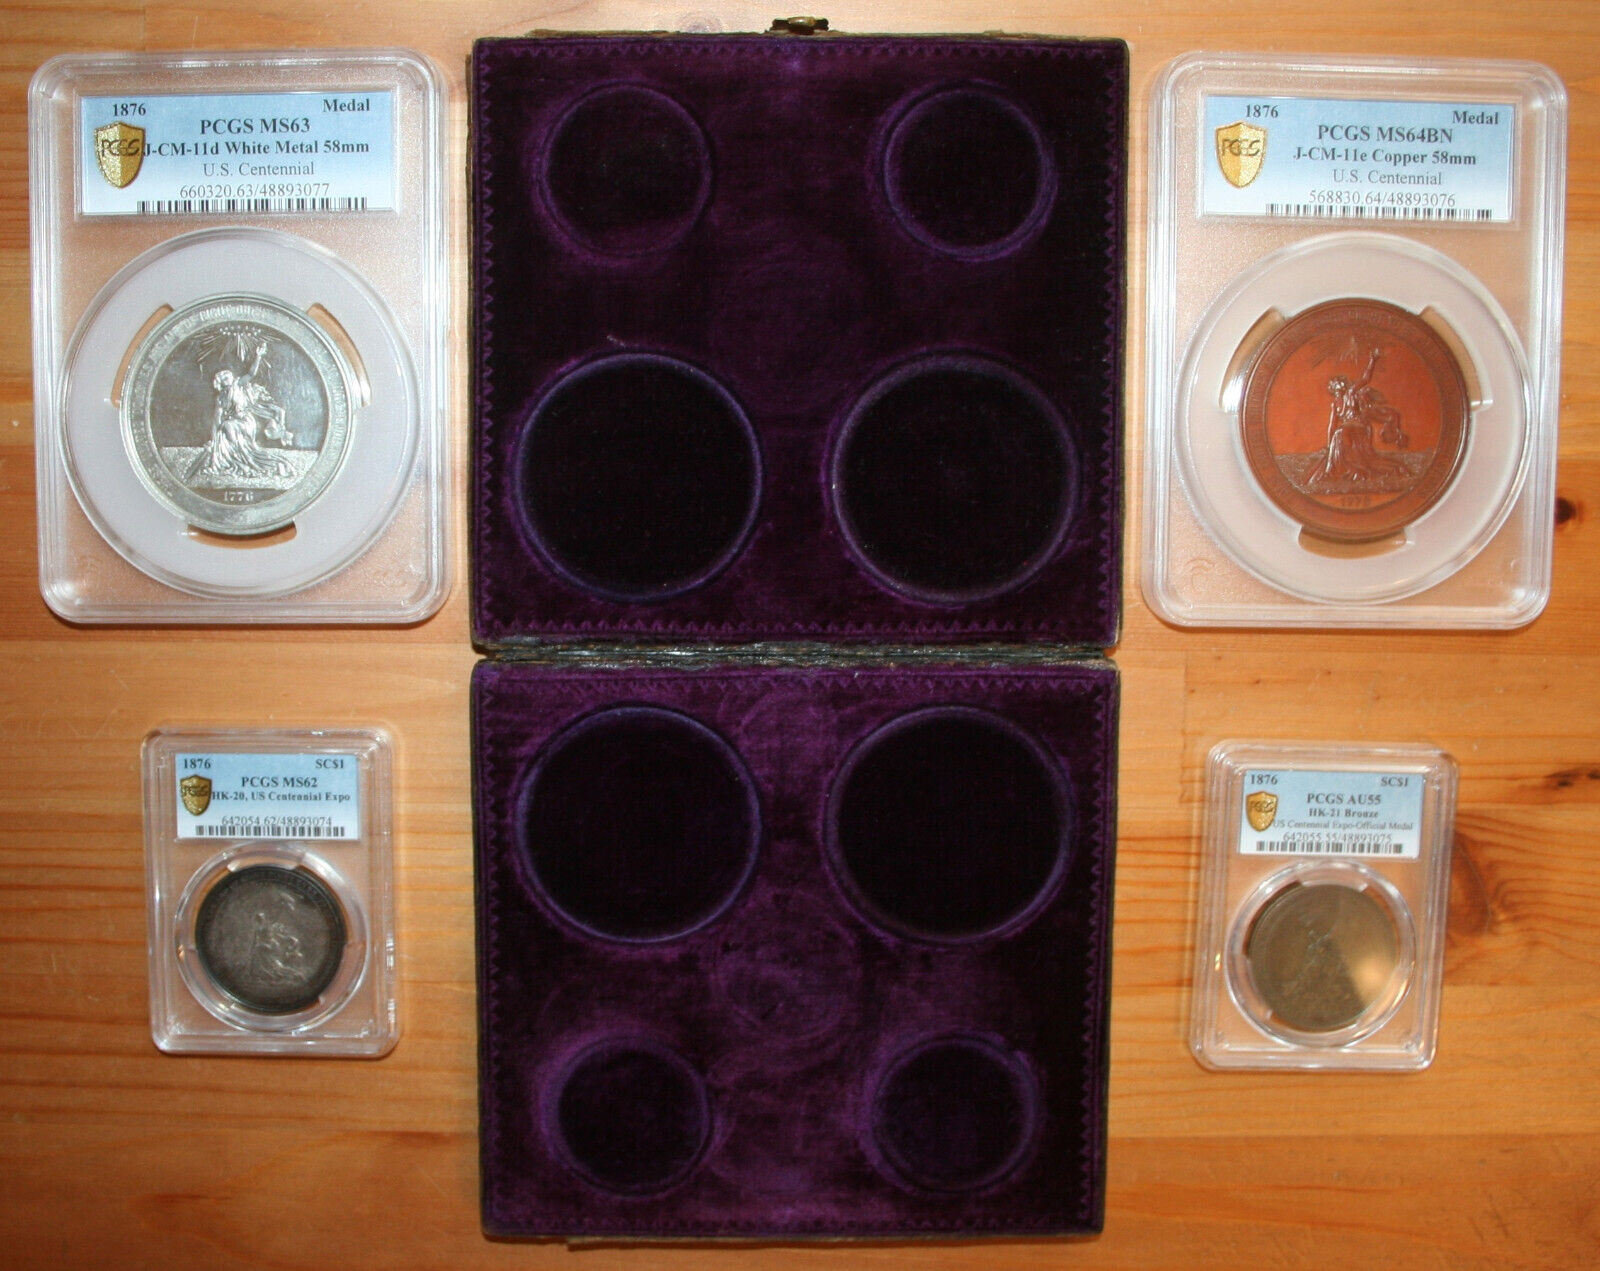 1876 - 4 Medal U.S. Centennial Exposition PCGS Graded Set With Original Case Box